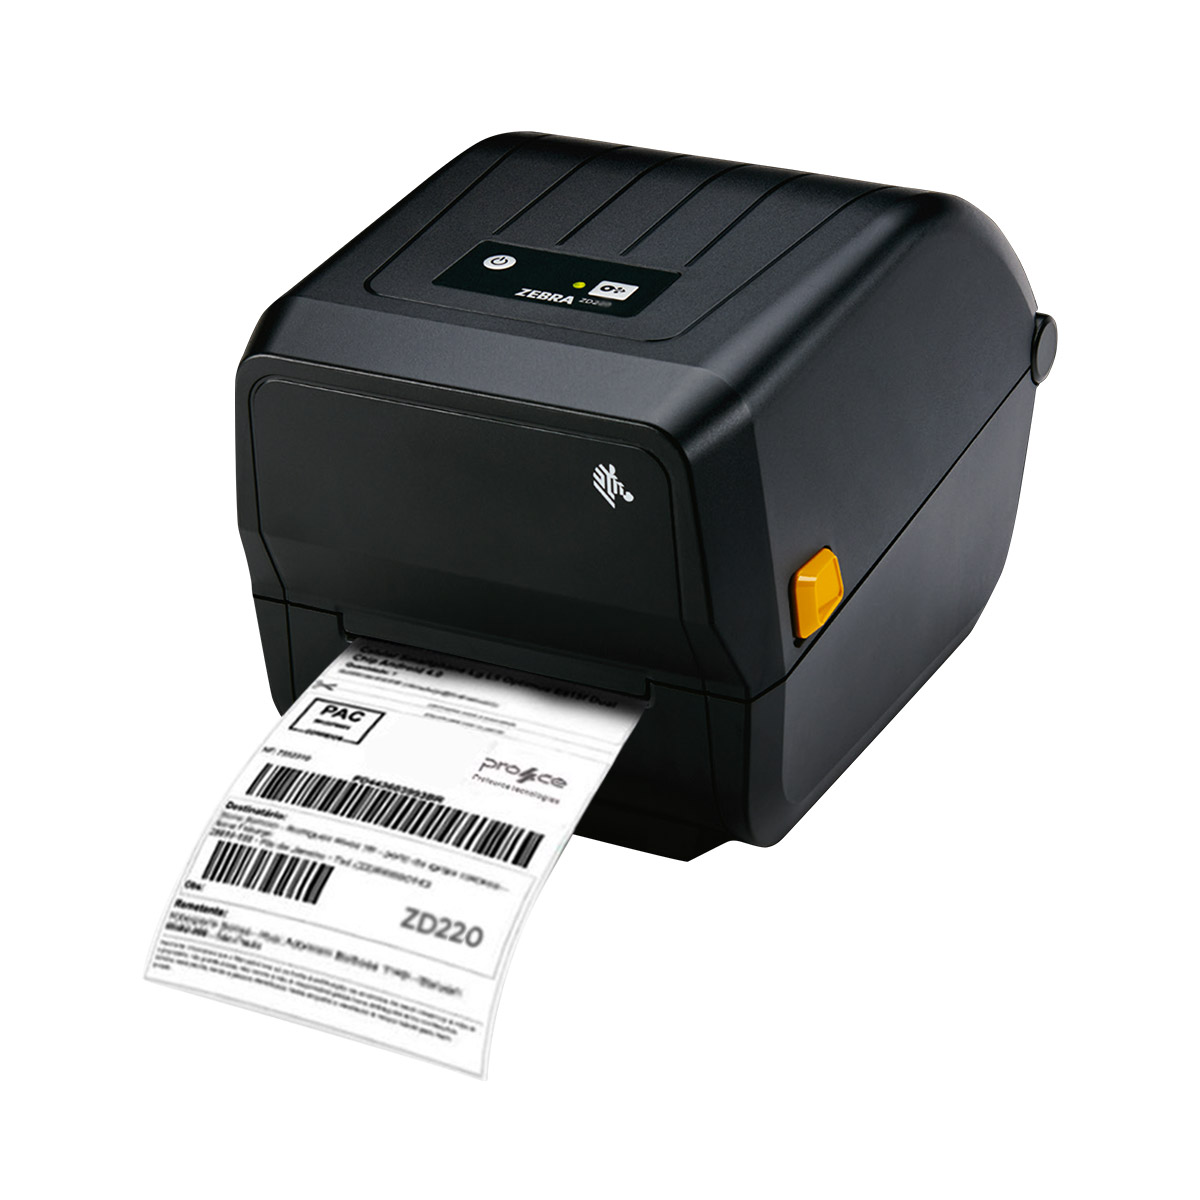 impressora-de-etiquetas-zebra-zd220-usb